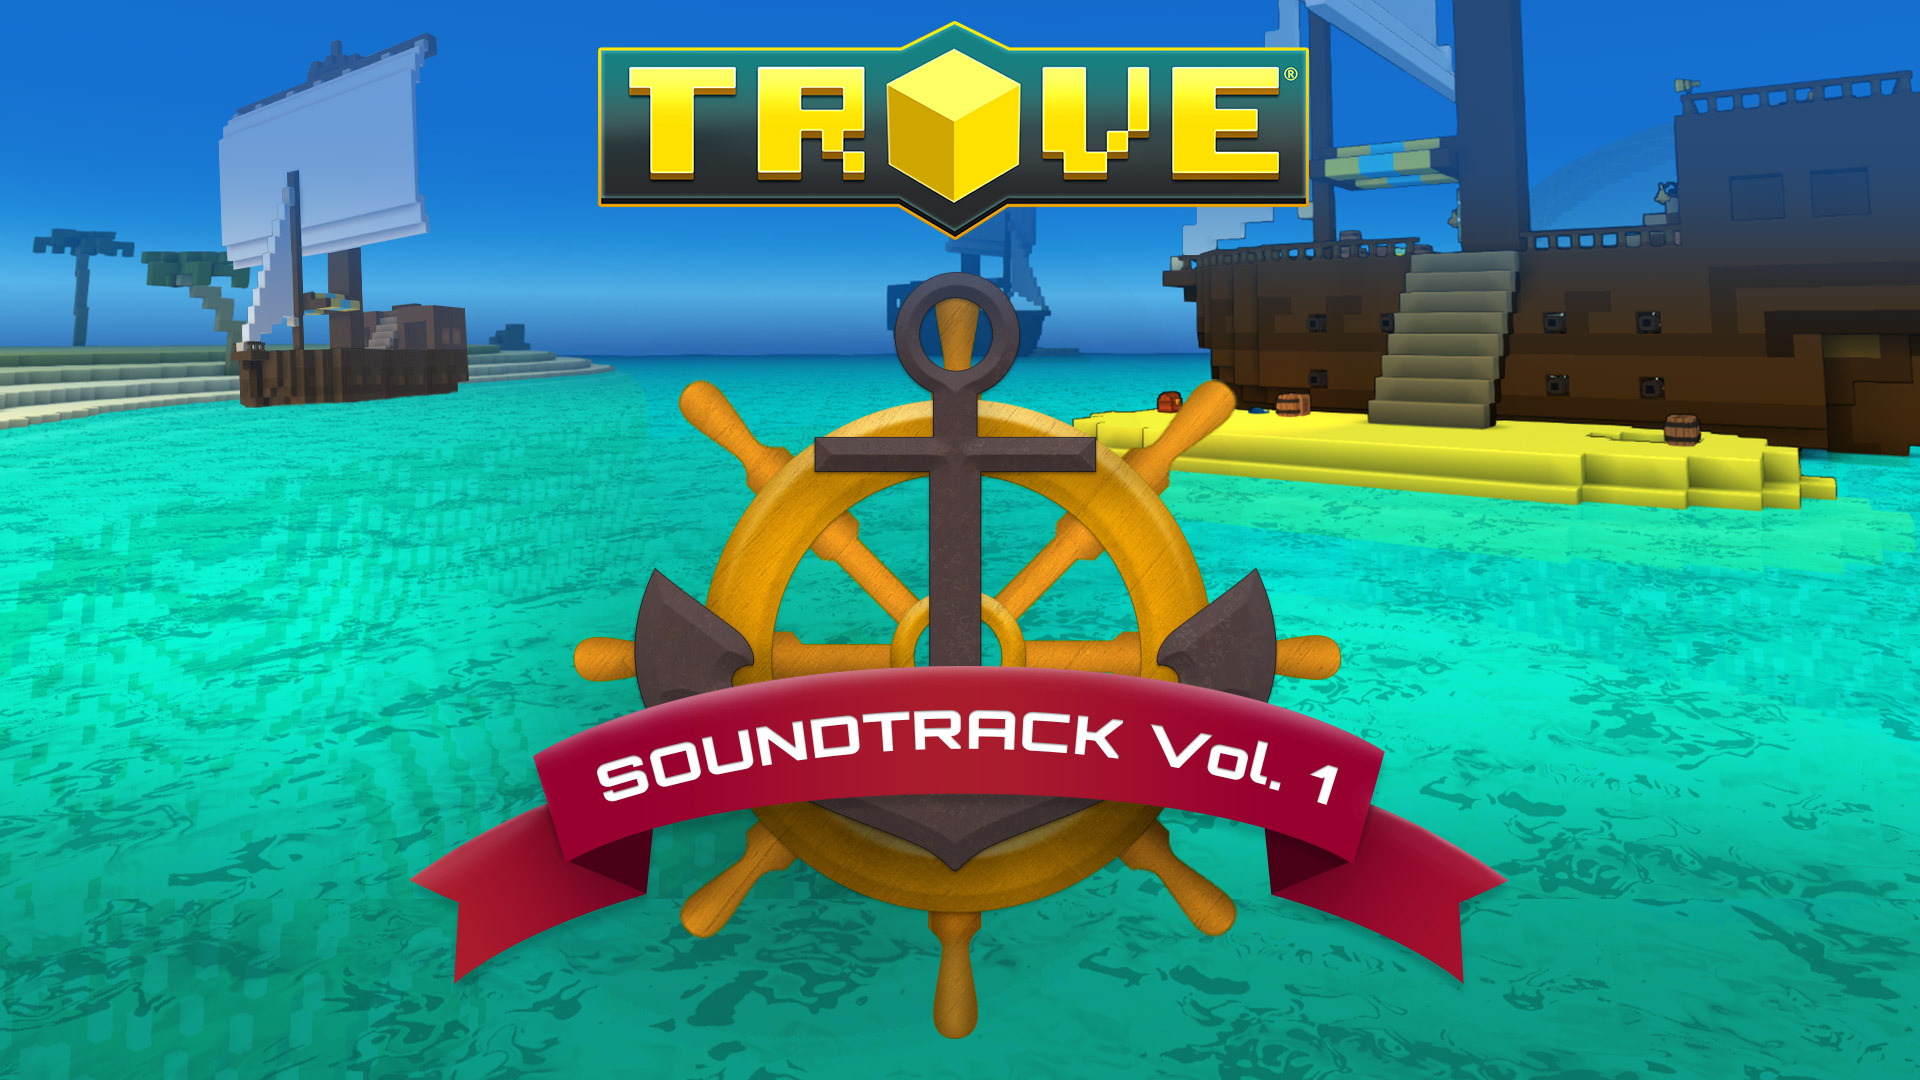 Trove - Soundtrack Vol. 1 Featured Screenshot #1